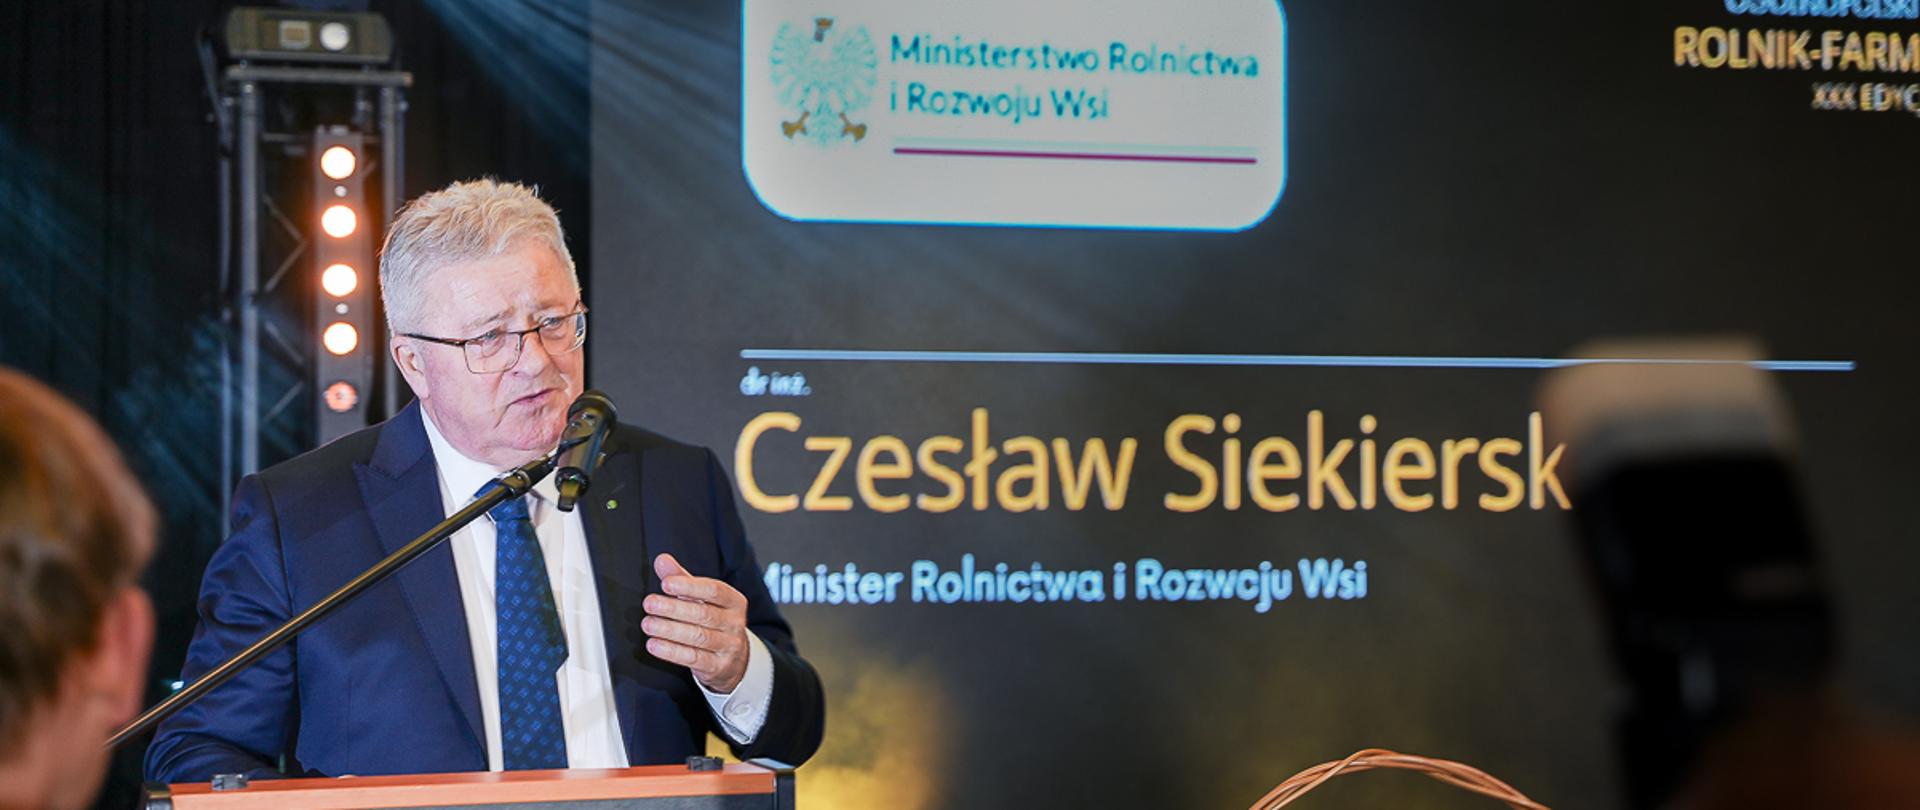 minister Czesław Siekierski przemawiający do mikrofonu